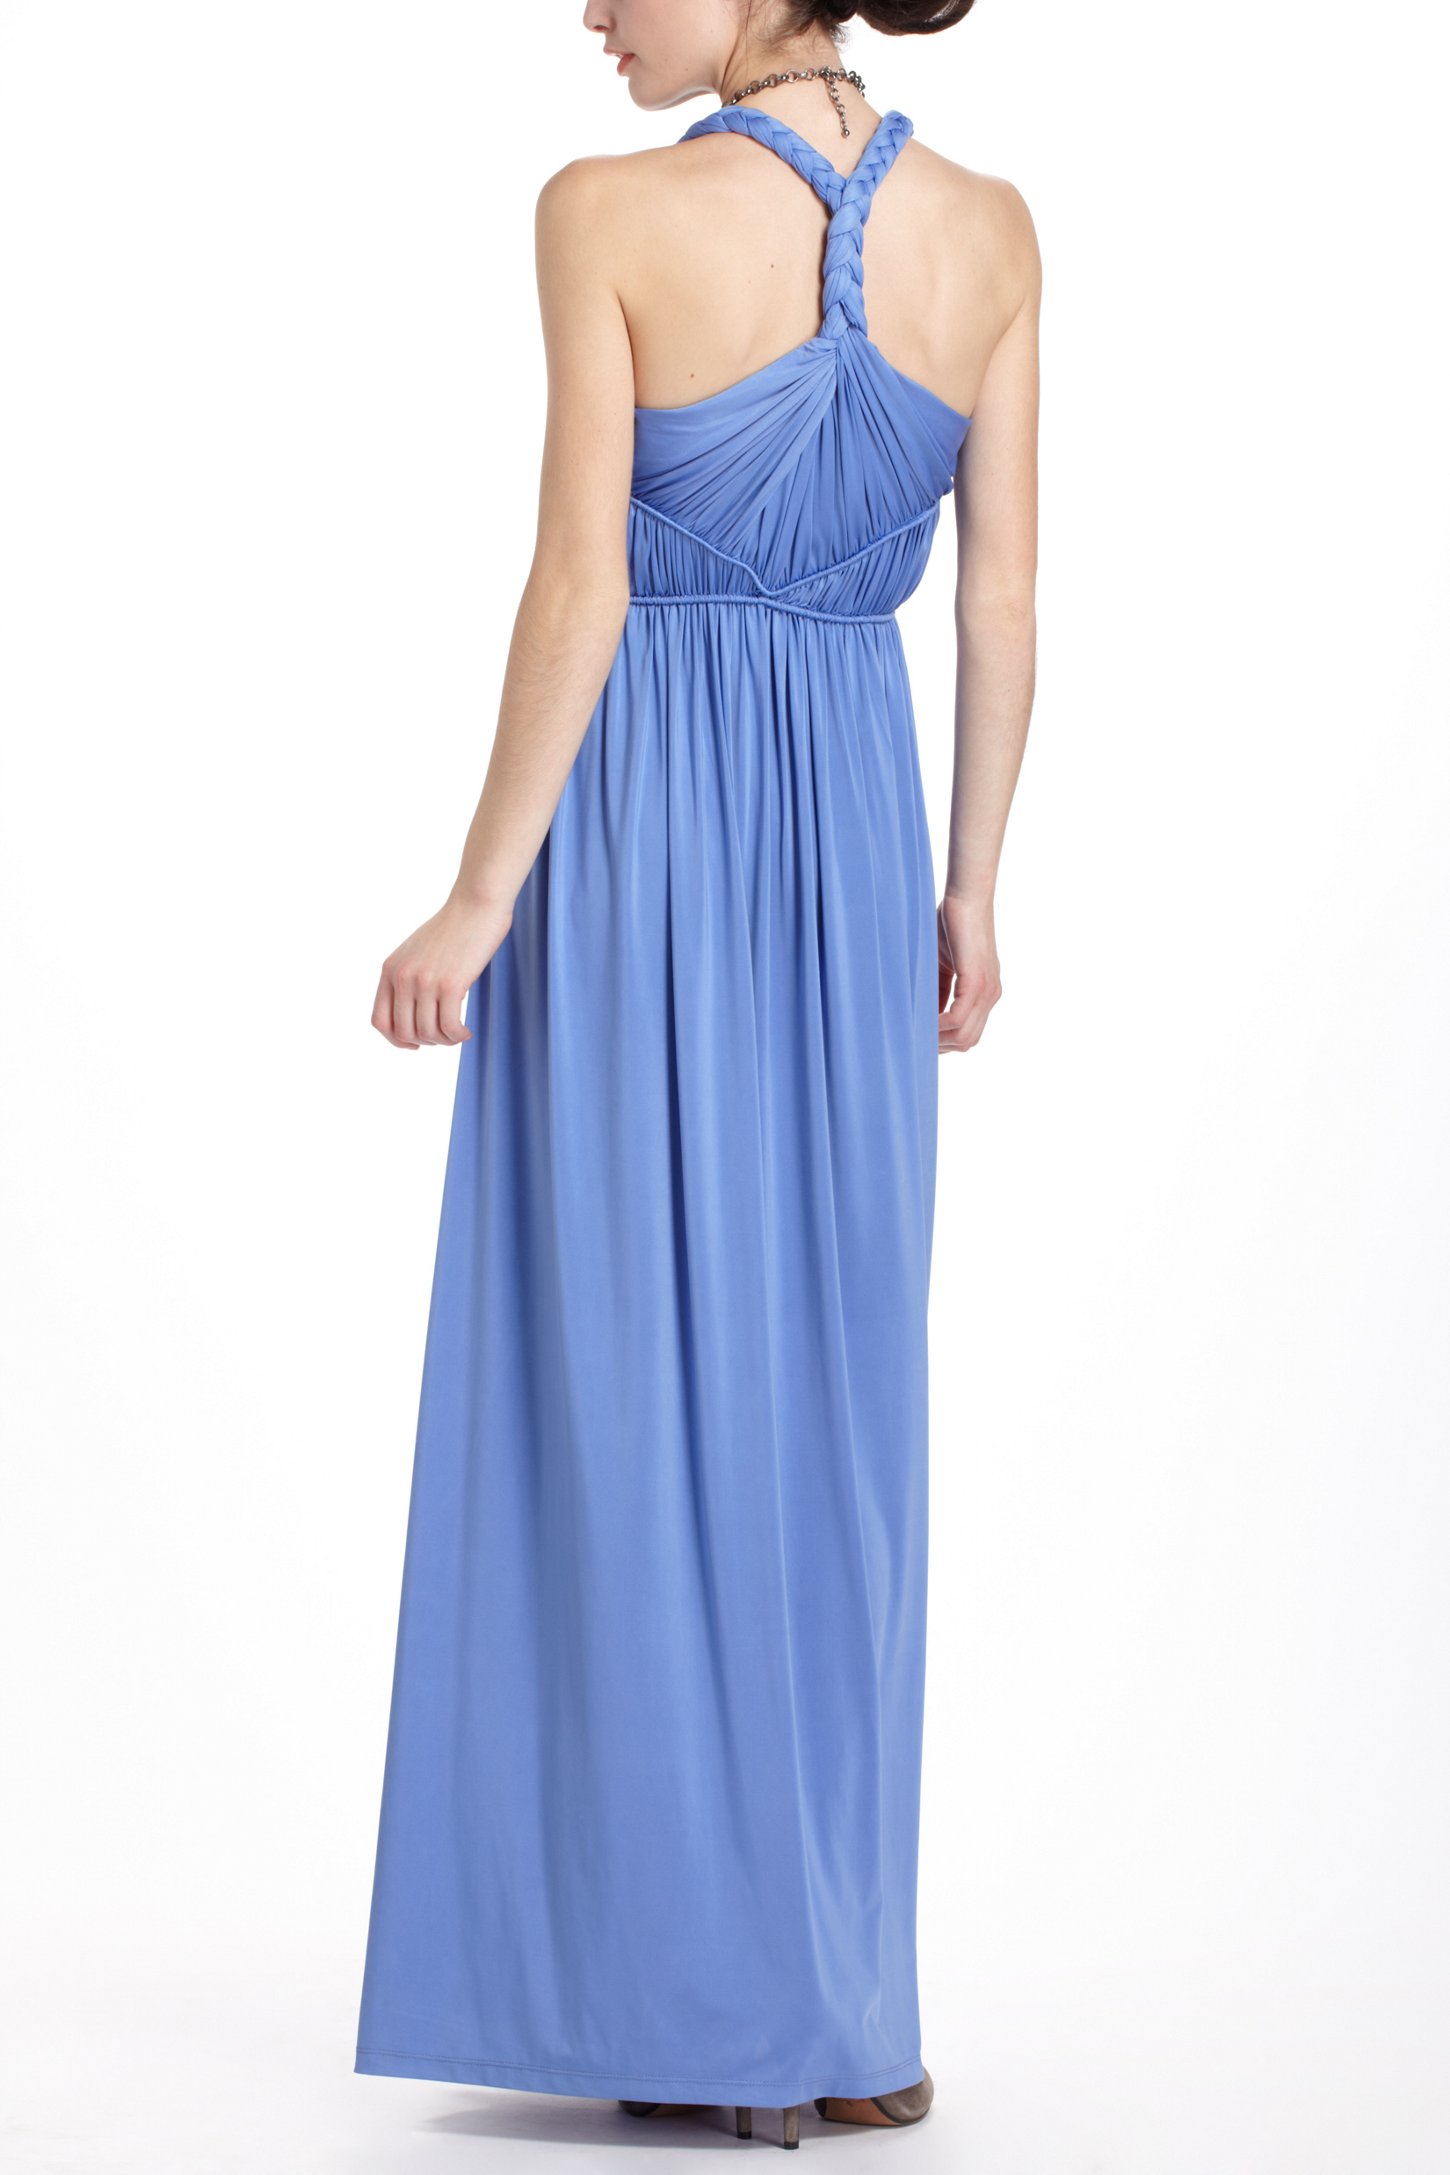 Lyst - Ranna gill Padma Maxi Dress in Blue